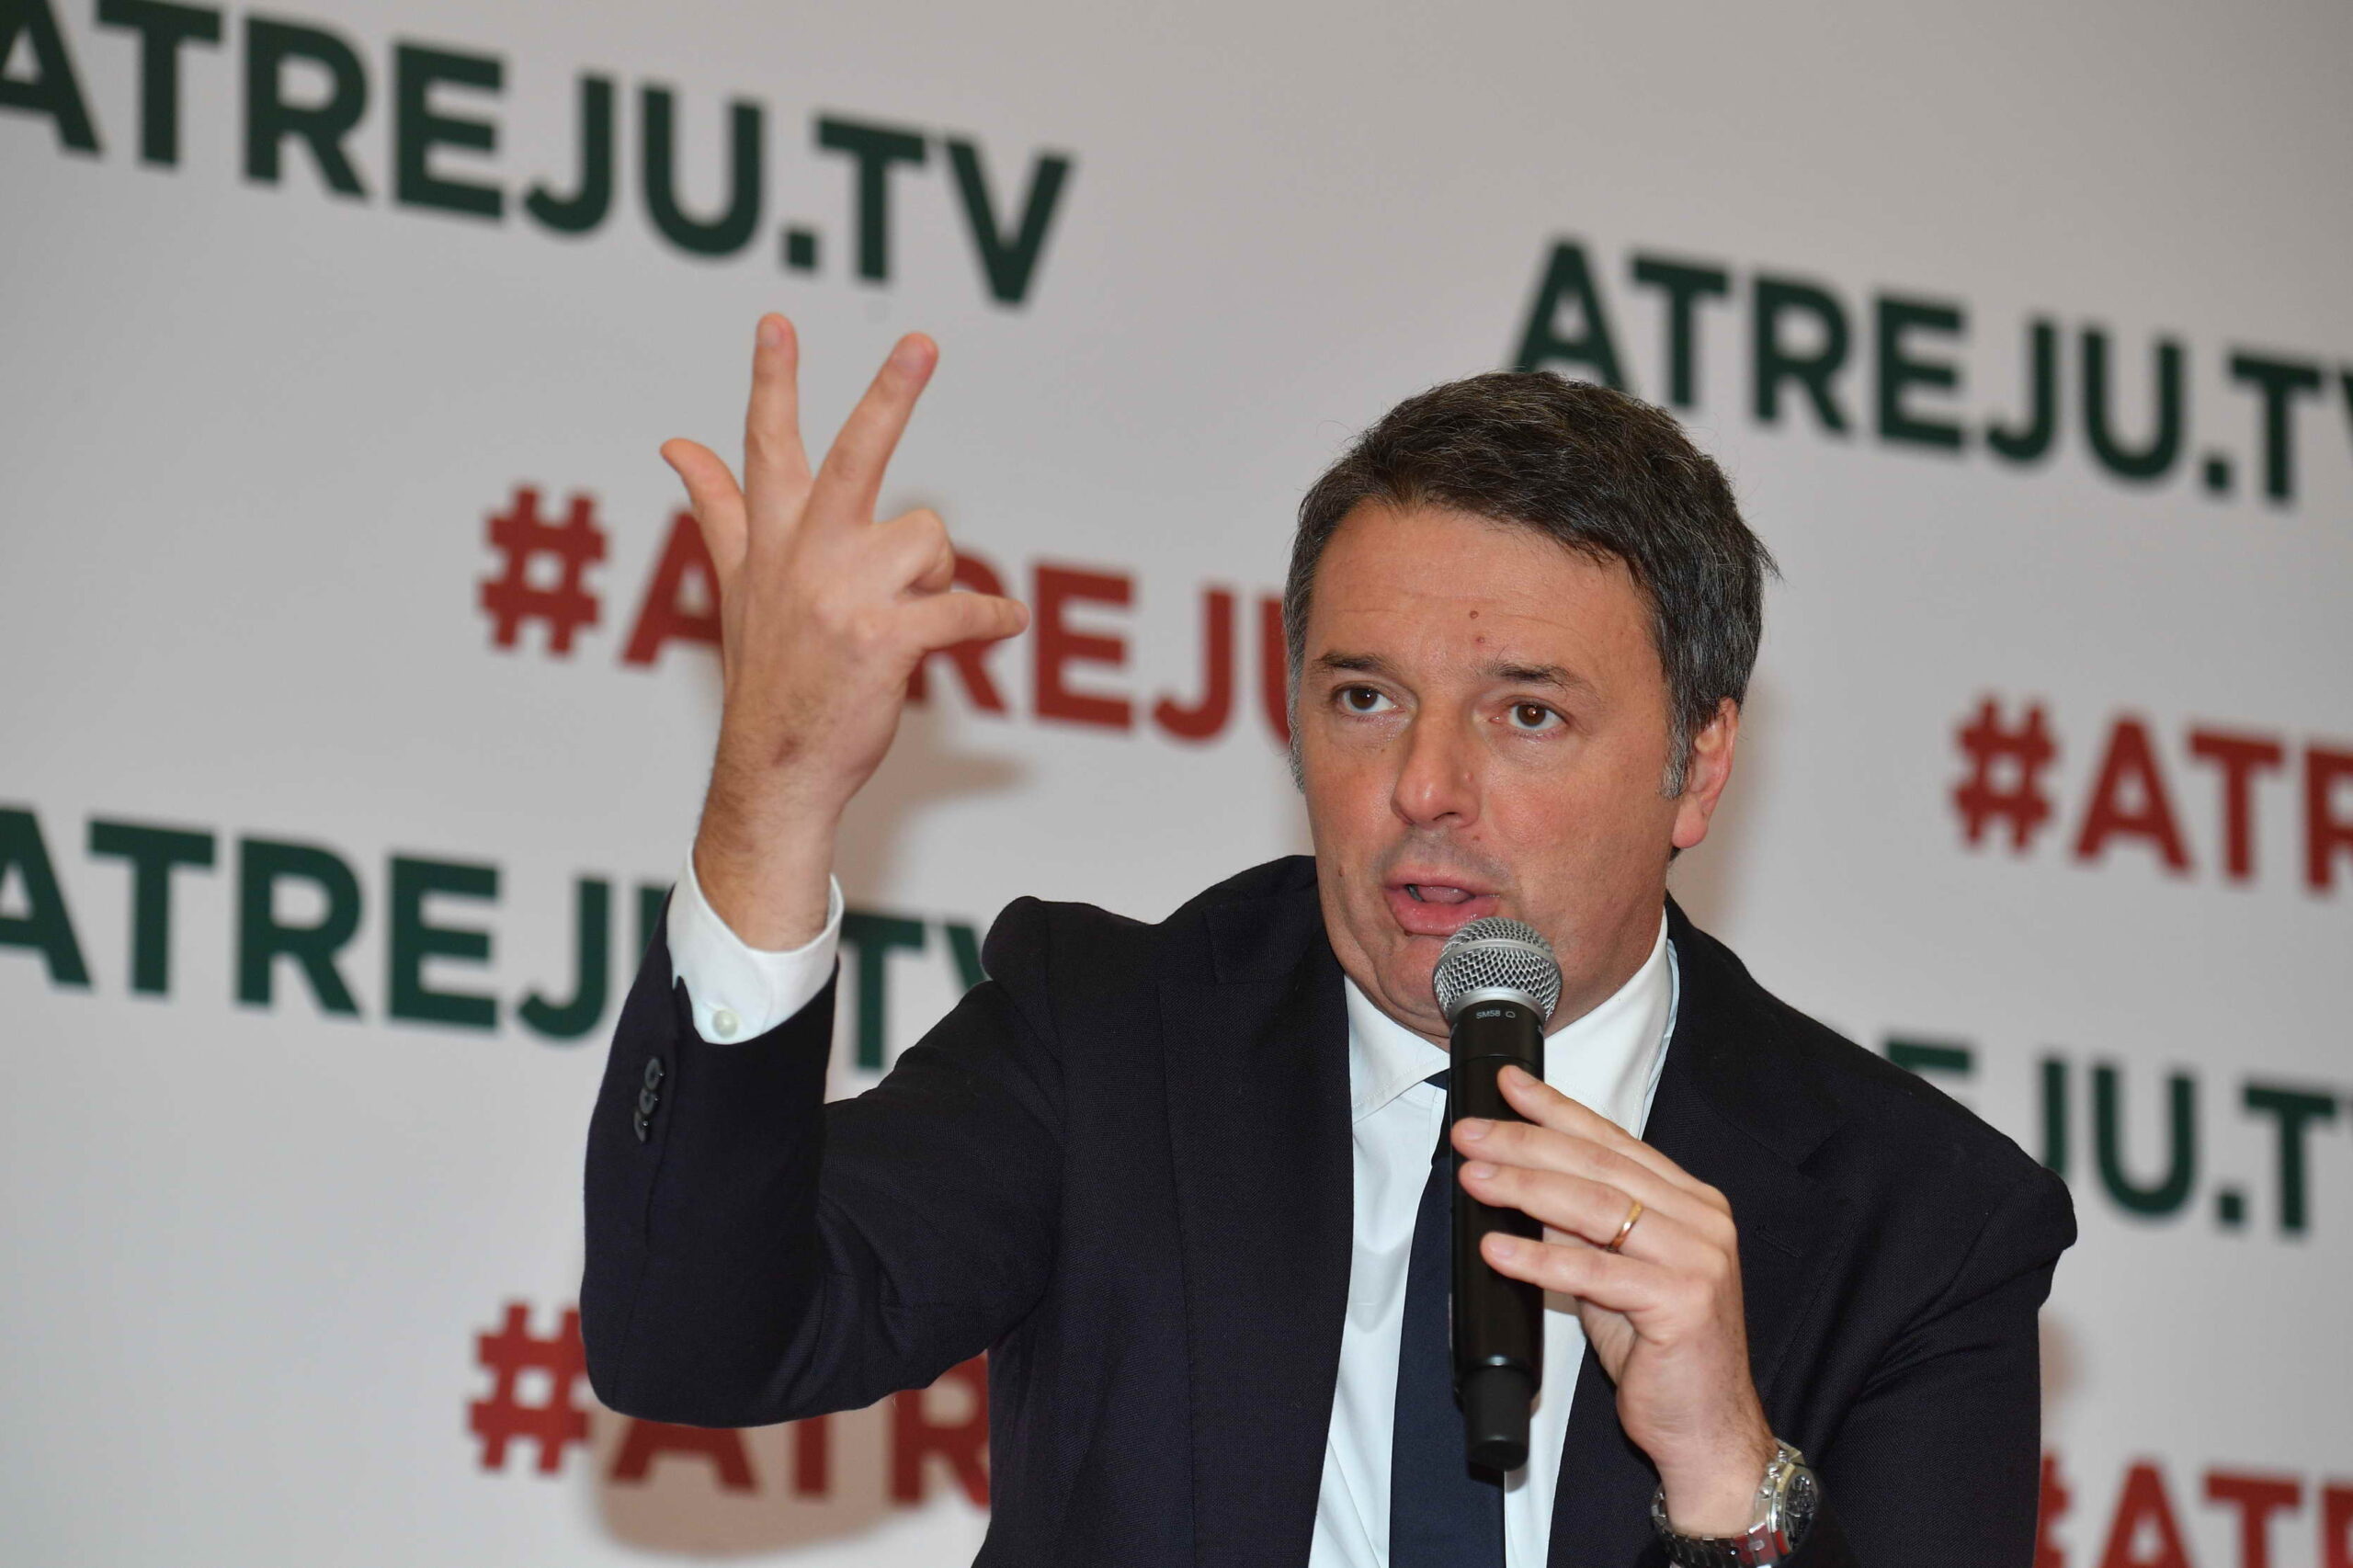 Dossieraggio, Matteo Renzi attacca Giorgia Meloni: "Ha bloccato la commissione d'inchiesta"